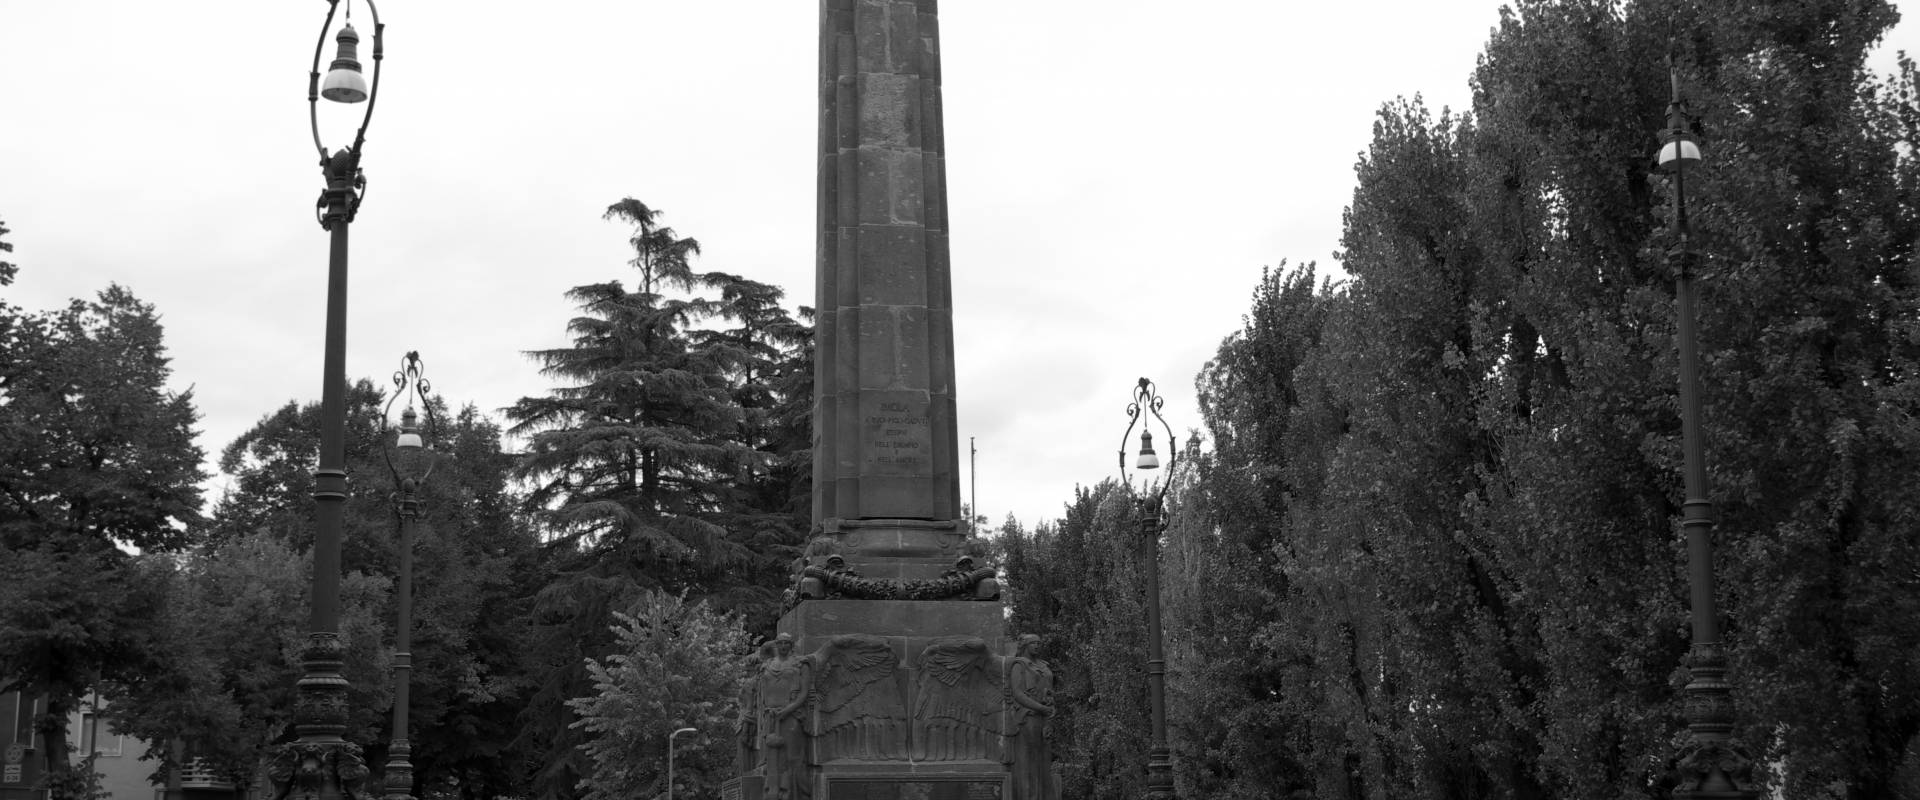 Monumento caduti della 1^ guerra mondiale foto di LUPO1959